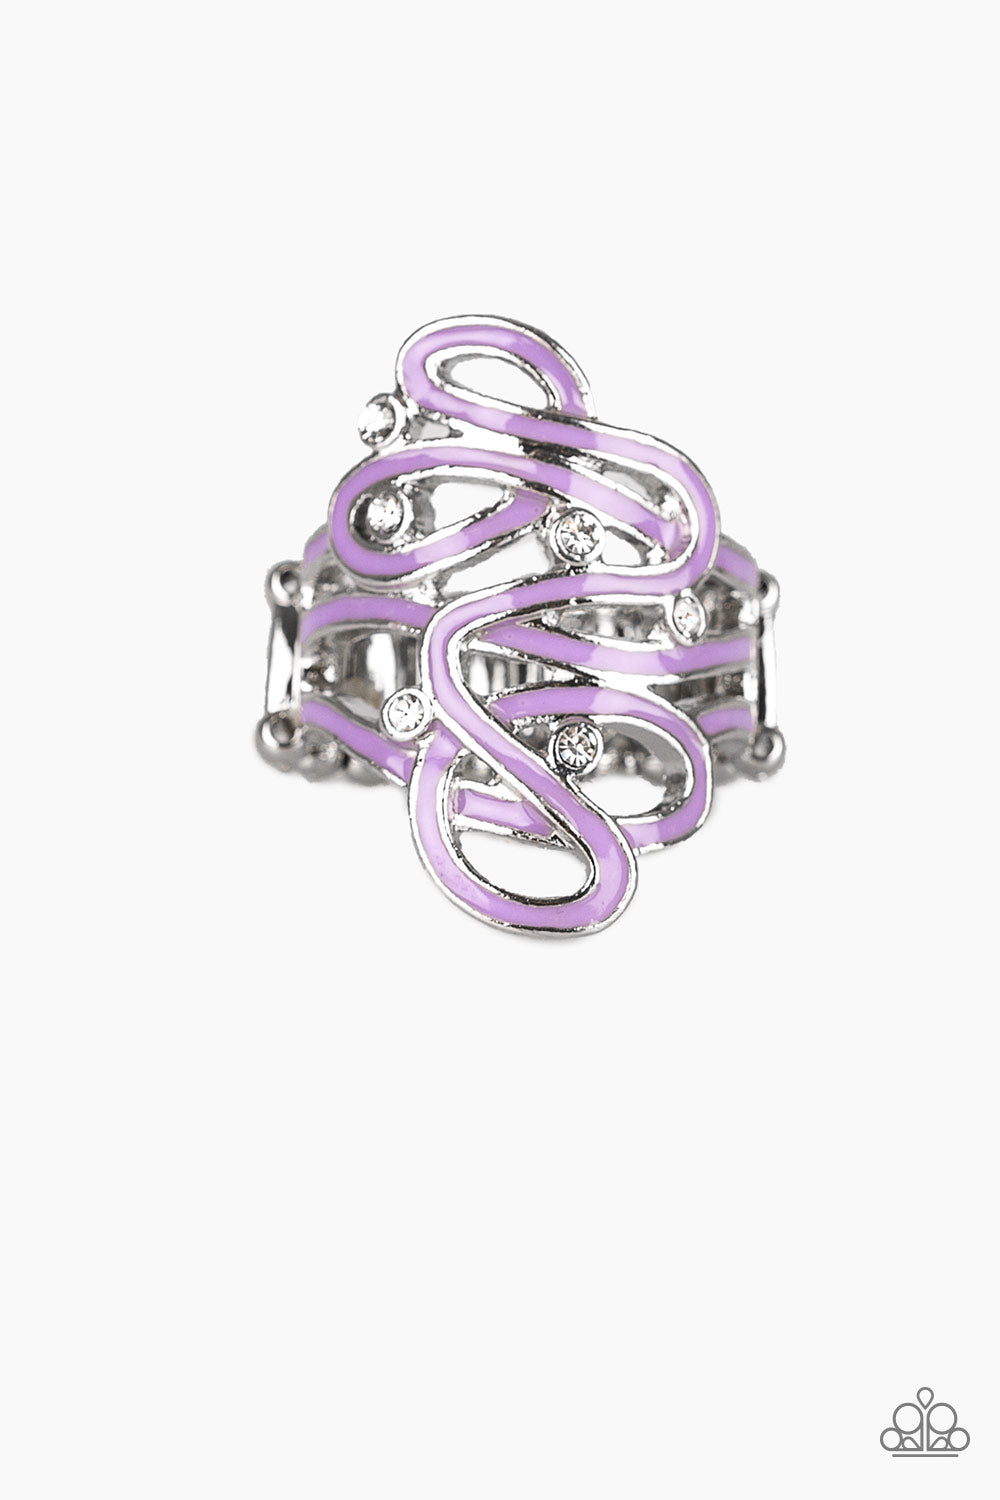 The Run-Around Purple Paparazzi Ring Cashmere Pink Jewels - Cashmere Pink Jewels & Accessories, Cashmere Pink Jewels & Accessories - Paparazzi